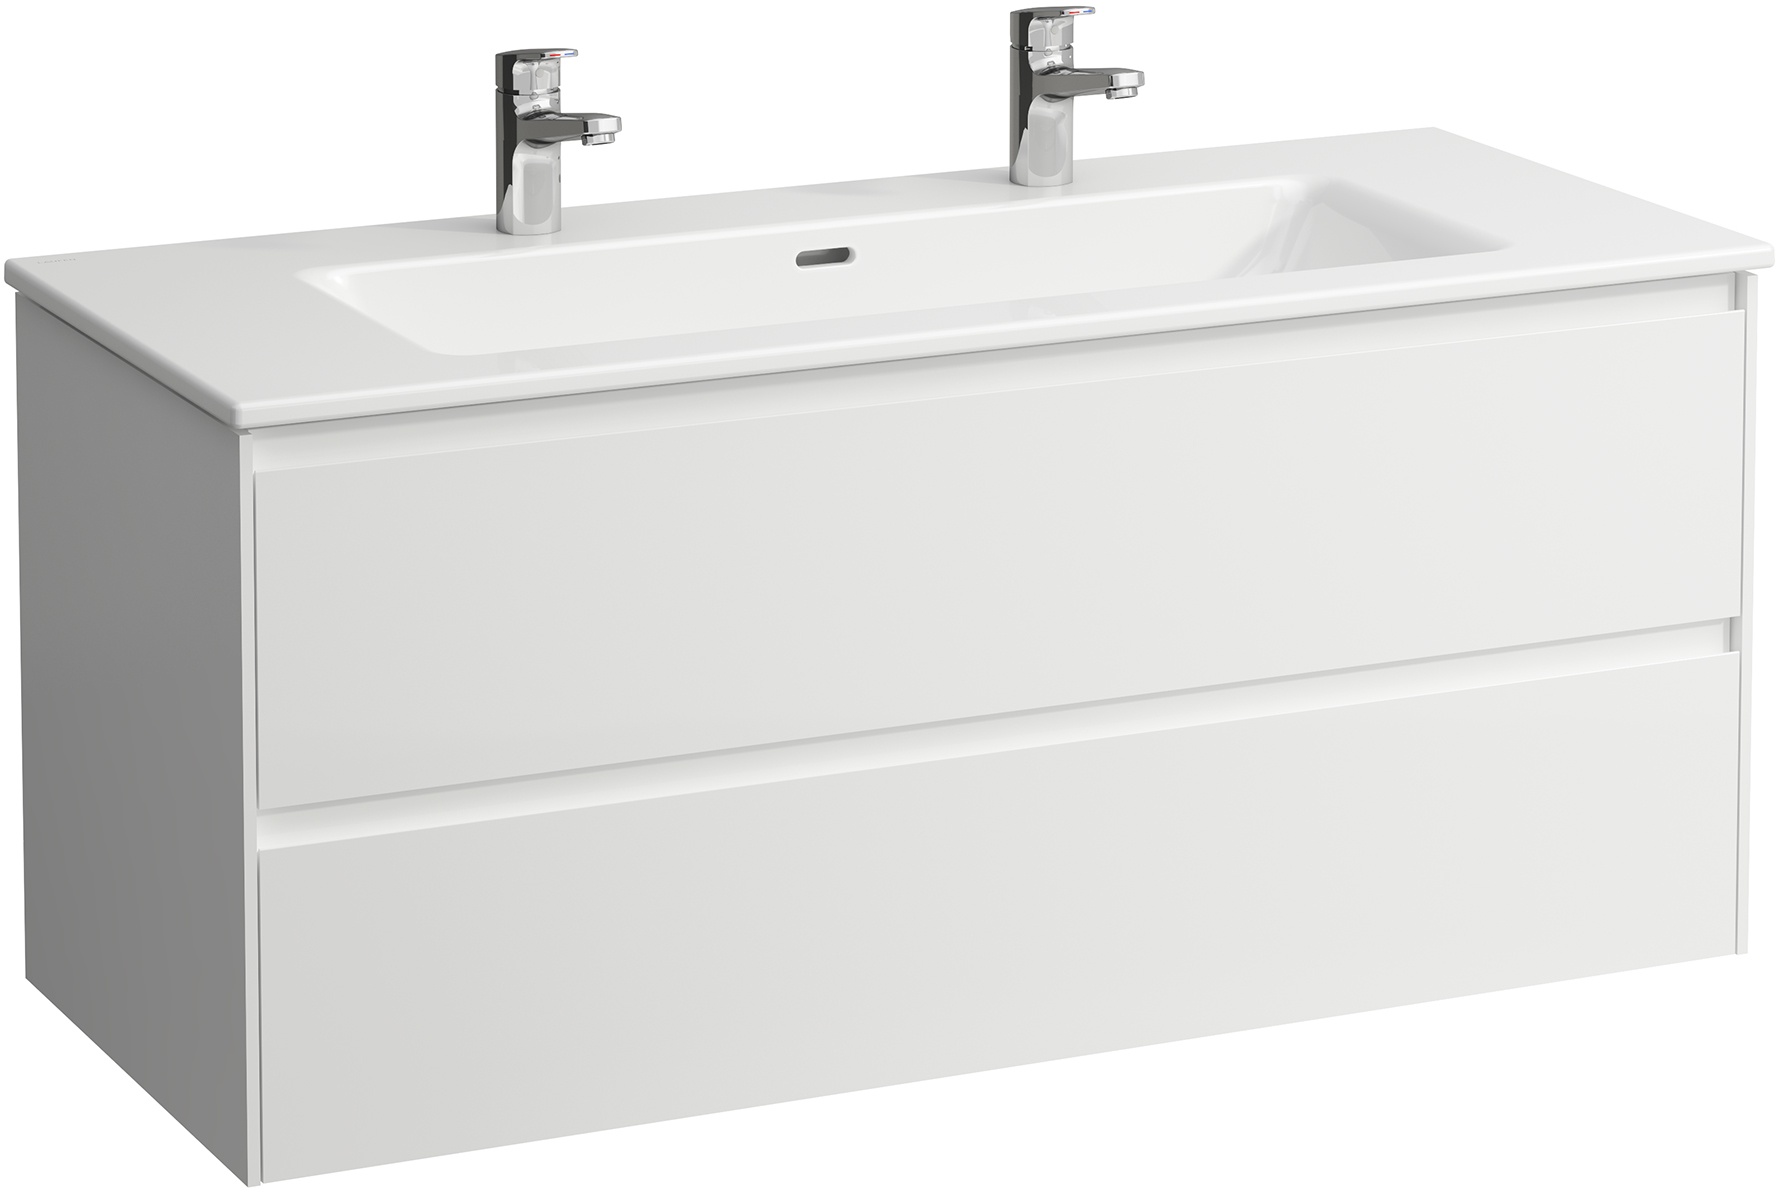 Waschtisch+Waschtischunterbau PRO S SET LANI 500x1200x540 Waschtisch weiß, 1 Hahnloch + Lani Waschtischunterbau, 2 Schubladen, integrierte Griffleiste, inklusive Ordnungssystem, weiß matt